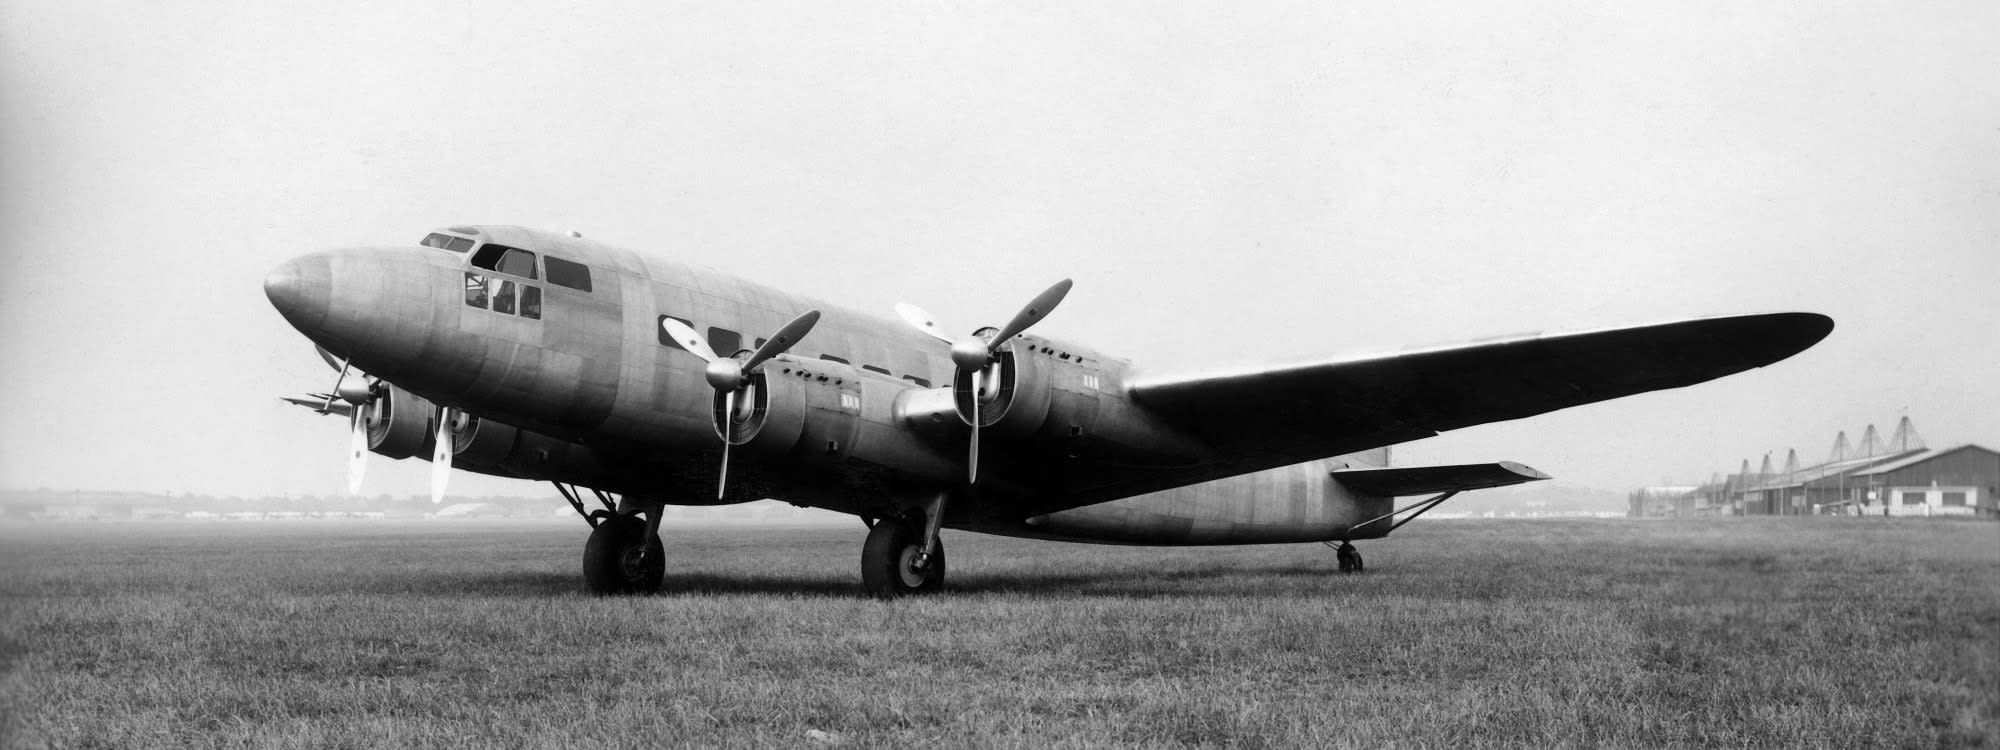 MB 160, prototype d'avion de transport commercial, au sol.